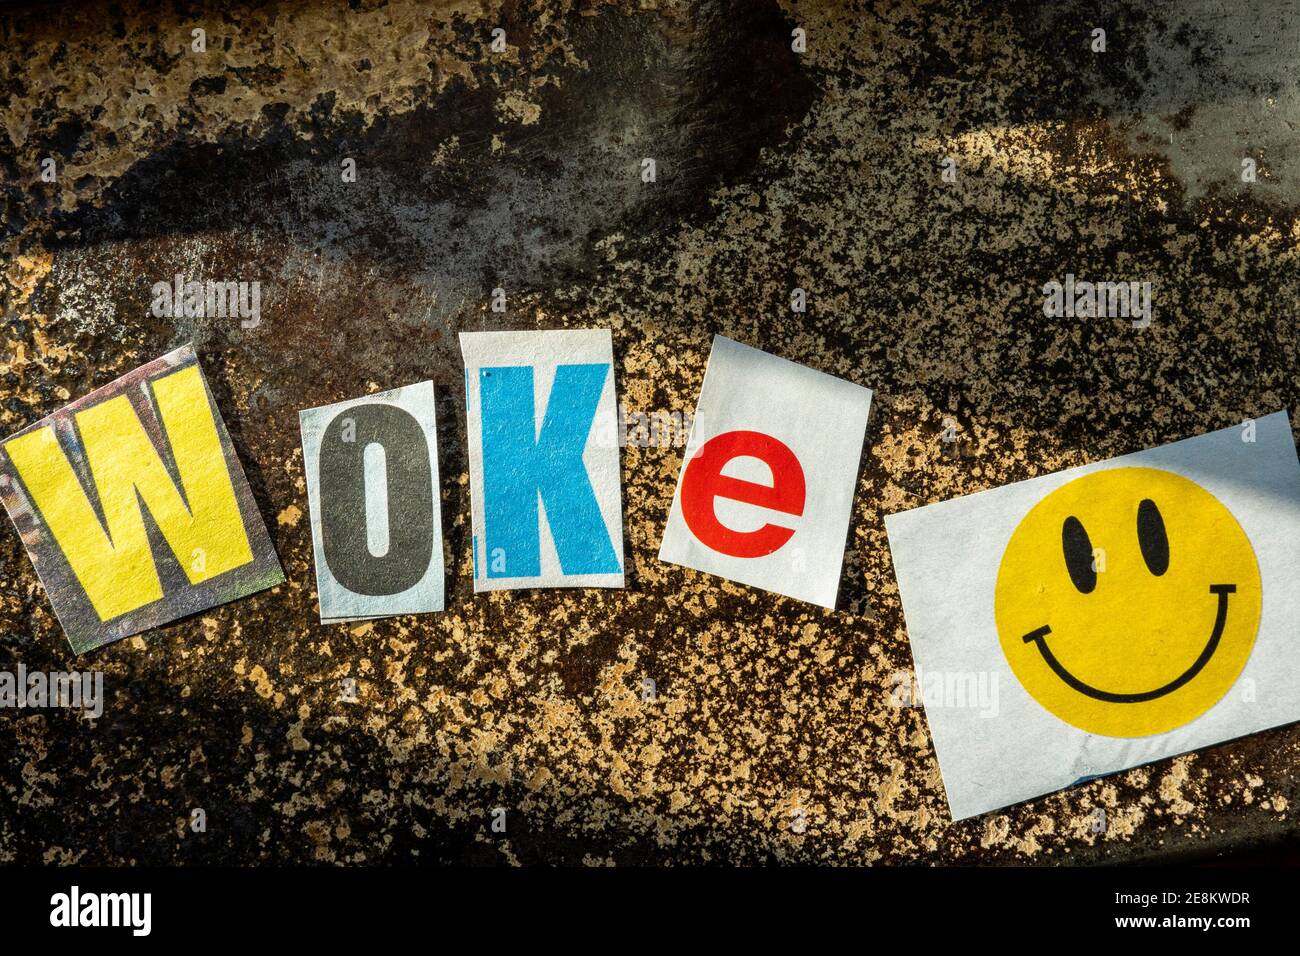 Le mot « WOKE » en utilisant des lettres en papier découpées dans la rançon  typographie d'effet de note Photo Stock - Alamy